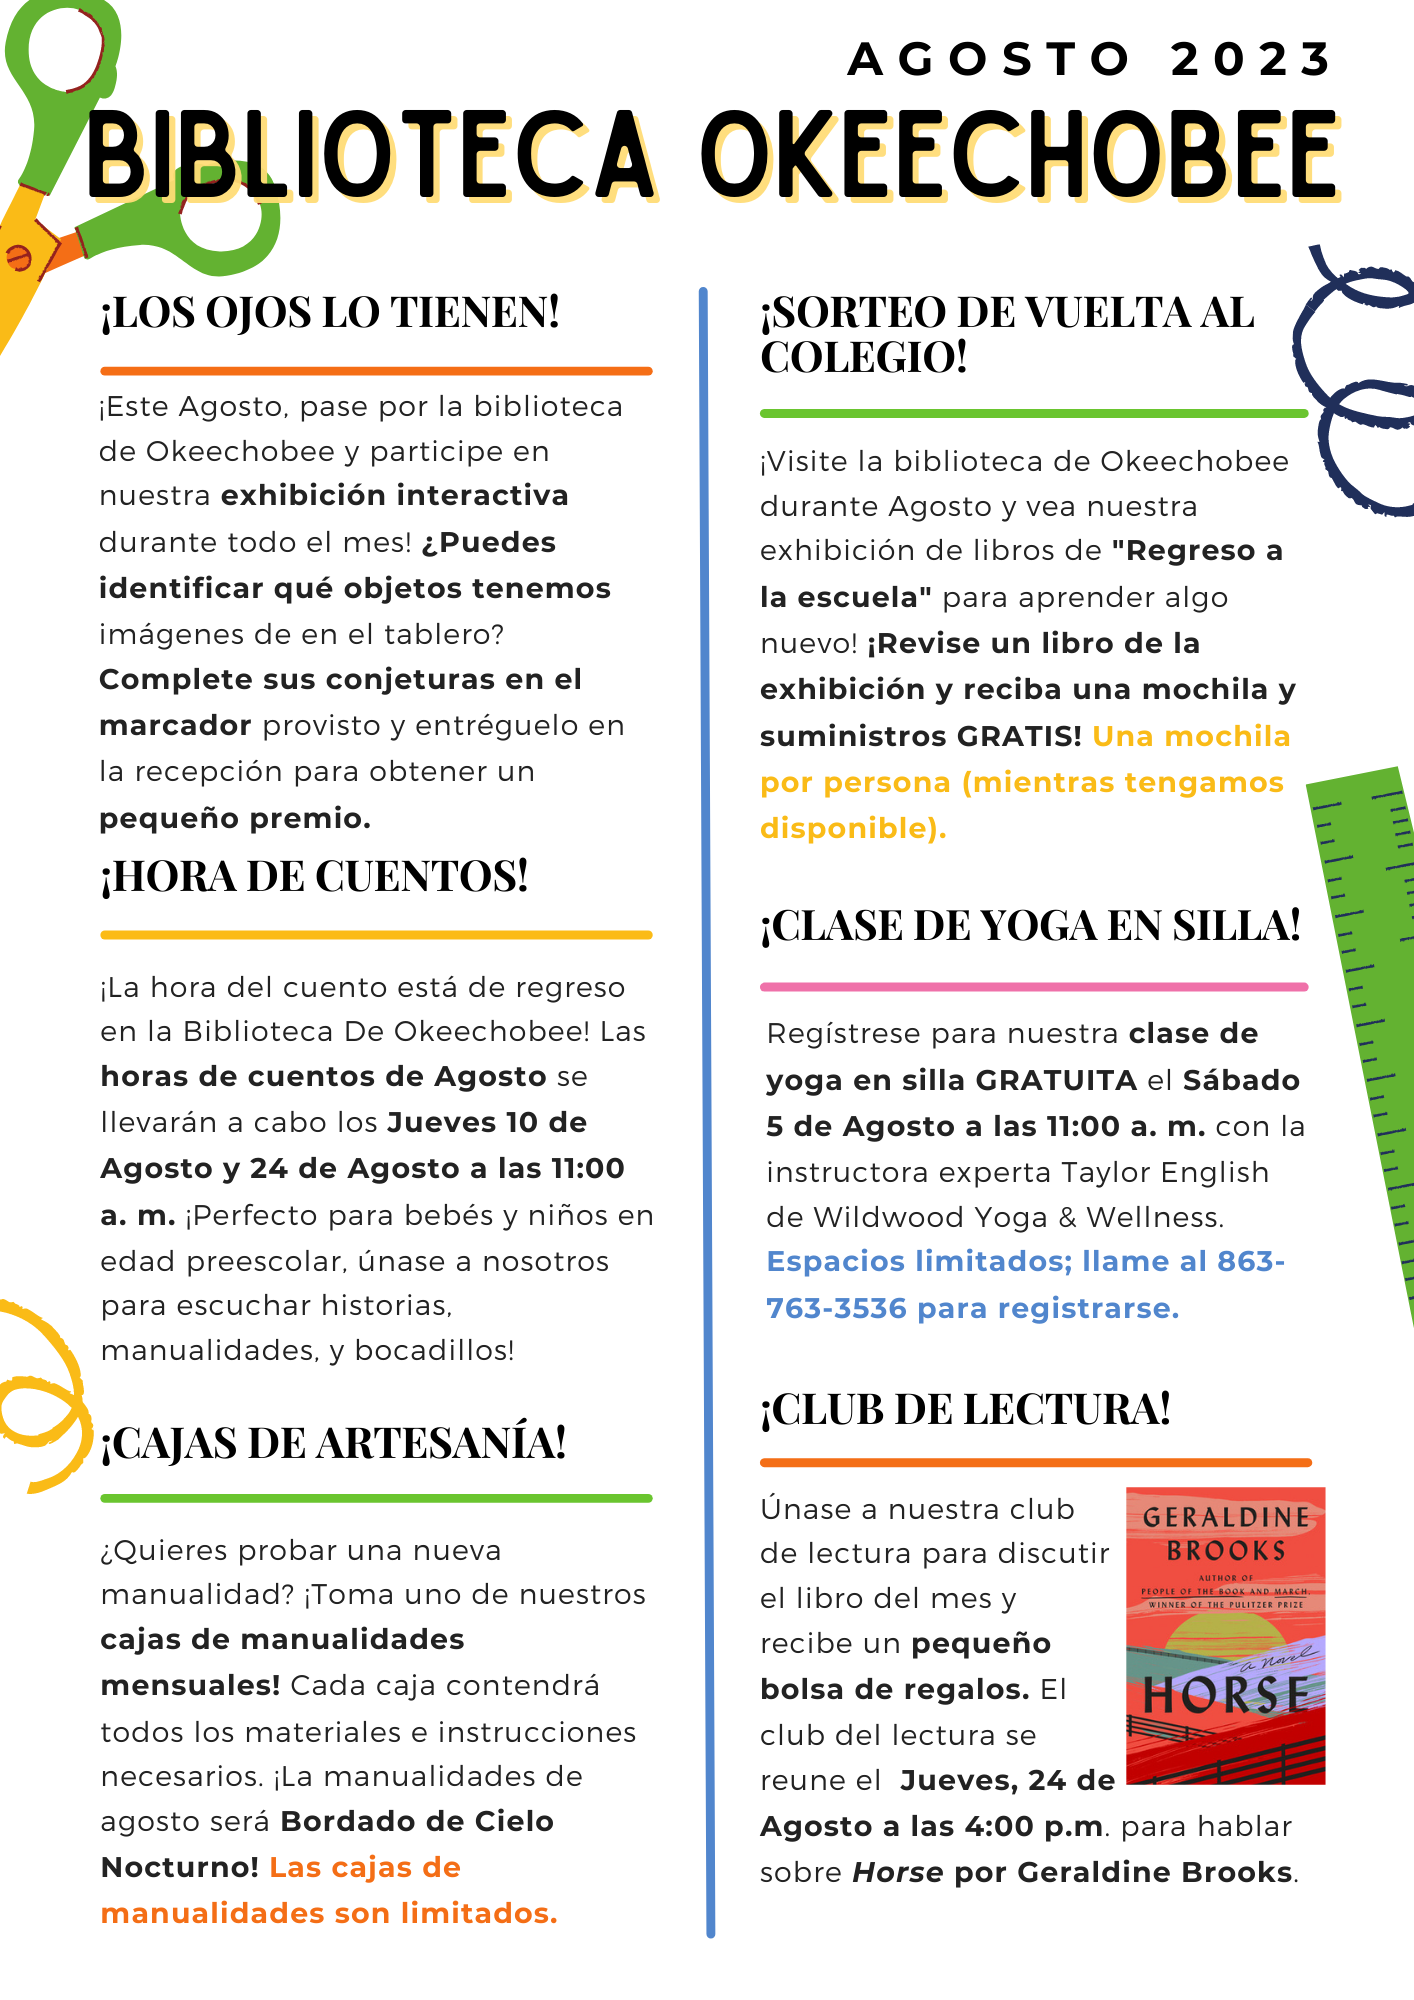 Esta es la página uno de la versión en español del boletín. La versión completa está disponible en formato PDF a través del enlace arriba de esta imagen.